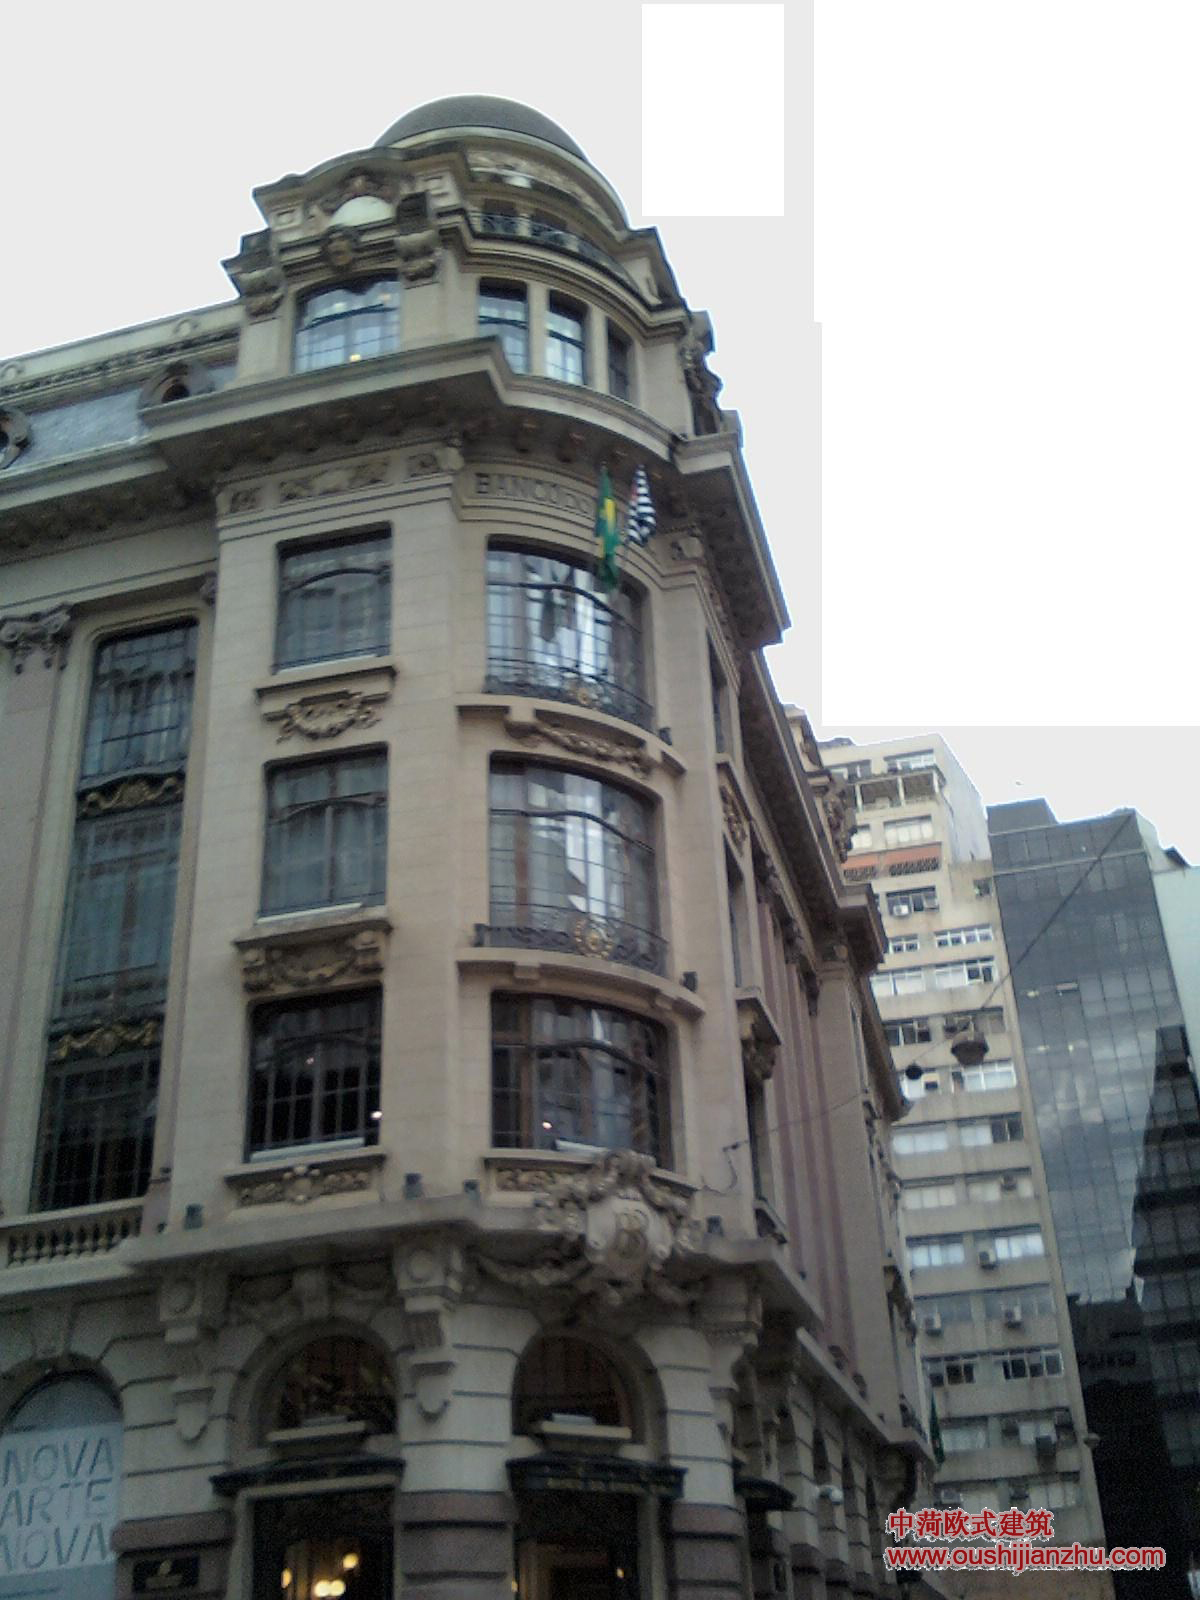 文化中心巴西银行建筑介绍 - 欧式建筑知识 - 中